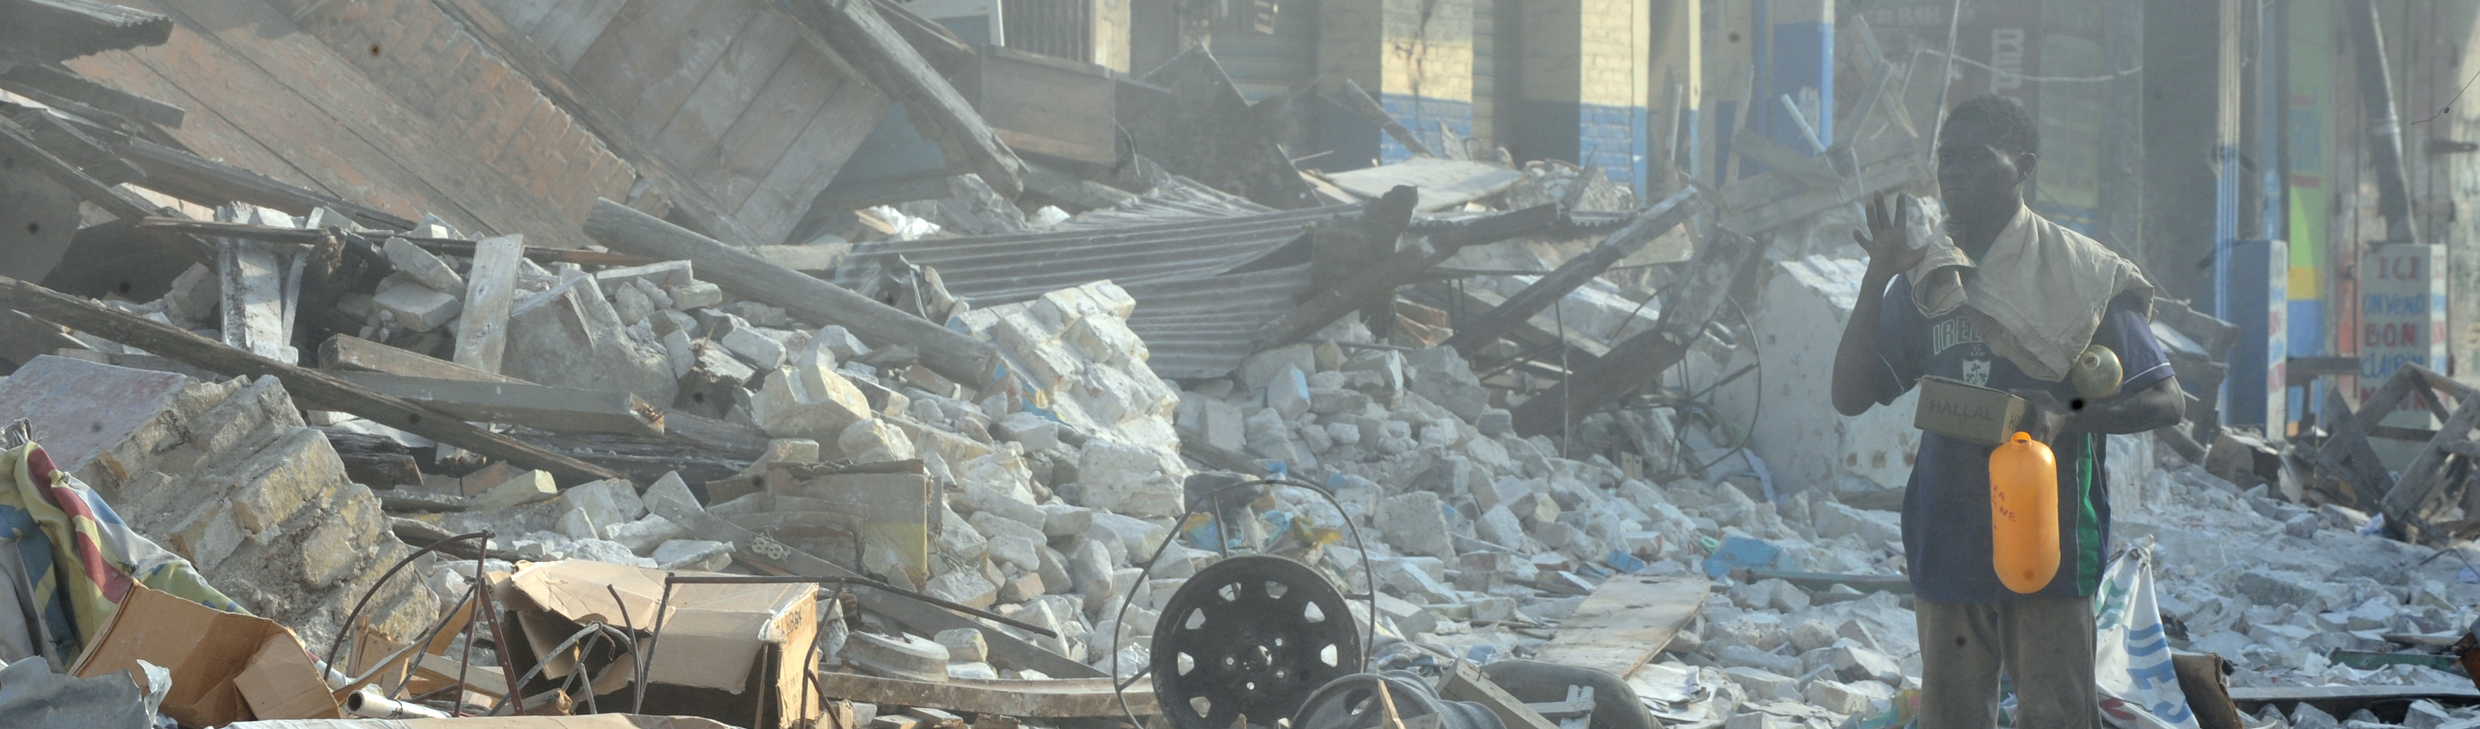 Hospitais cheios e casas destruídas: Como está o Haiti após terremoto que deixou 10 mil feridos